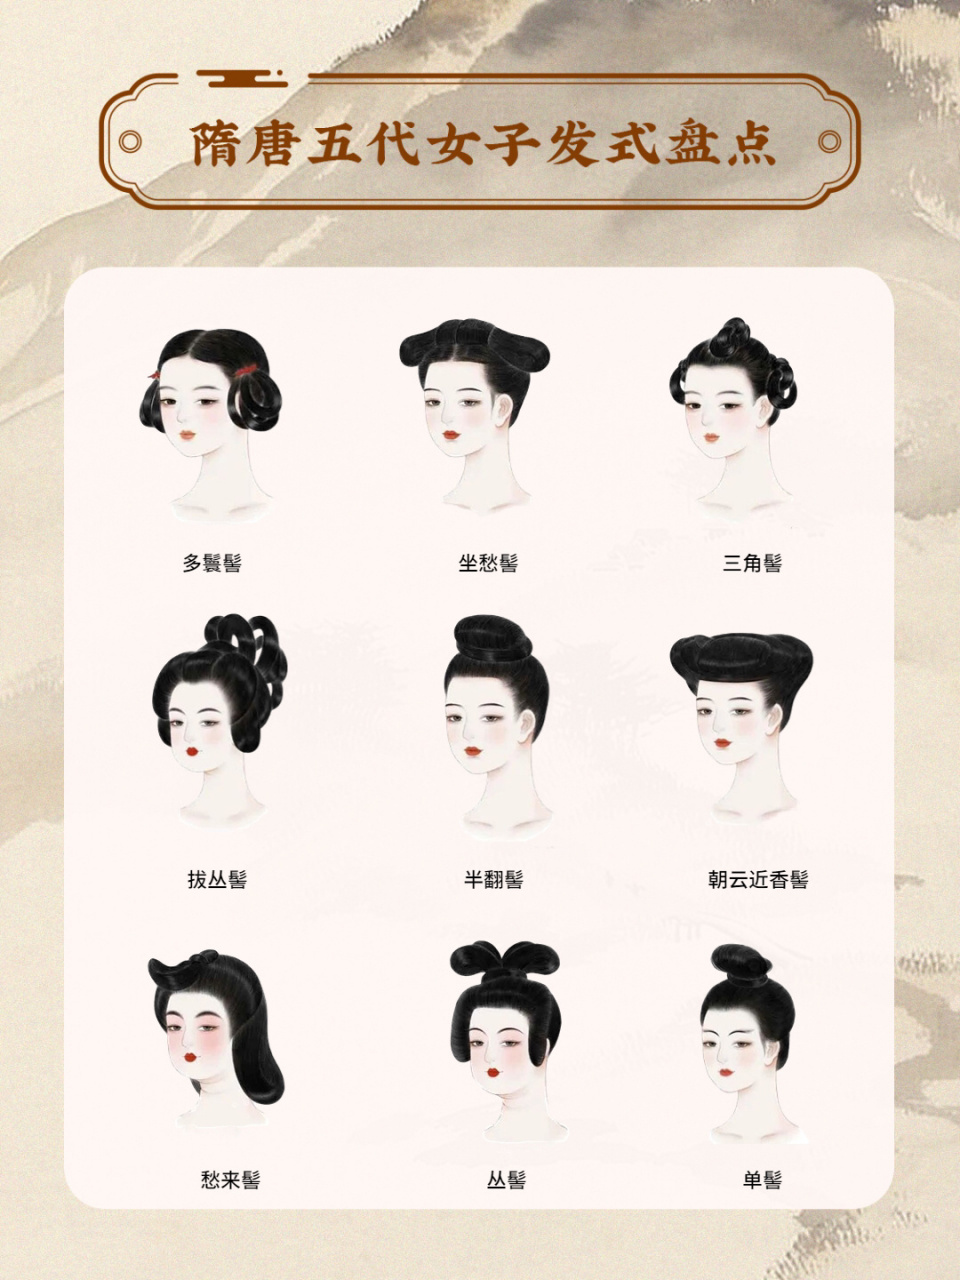 隋朝时期女子发 时已出现颇多变化求新的发髻式样